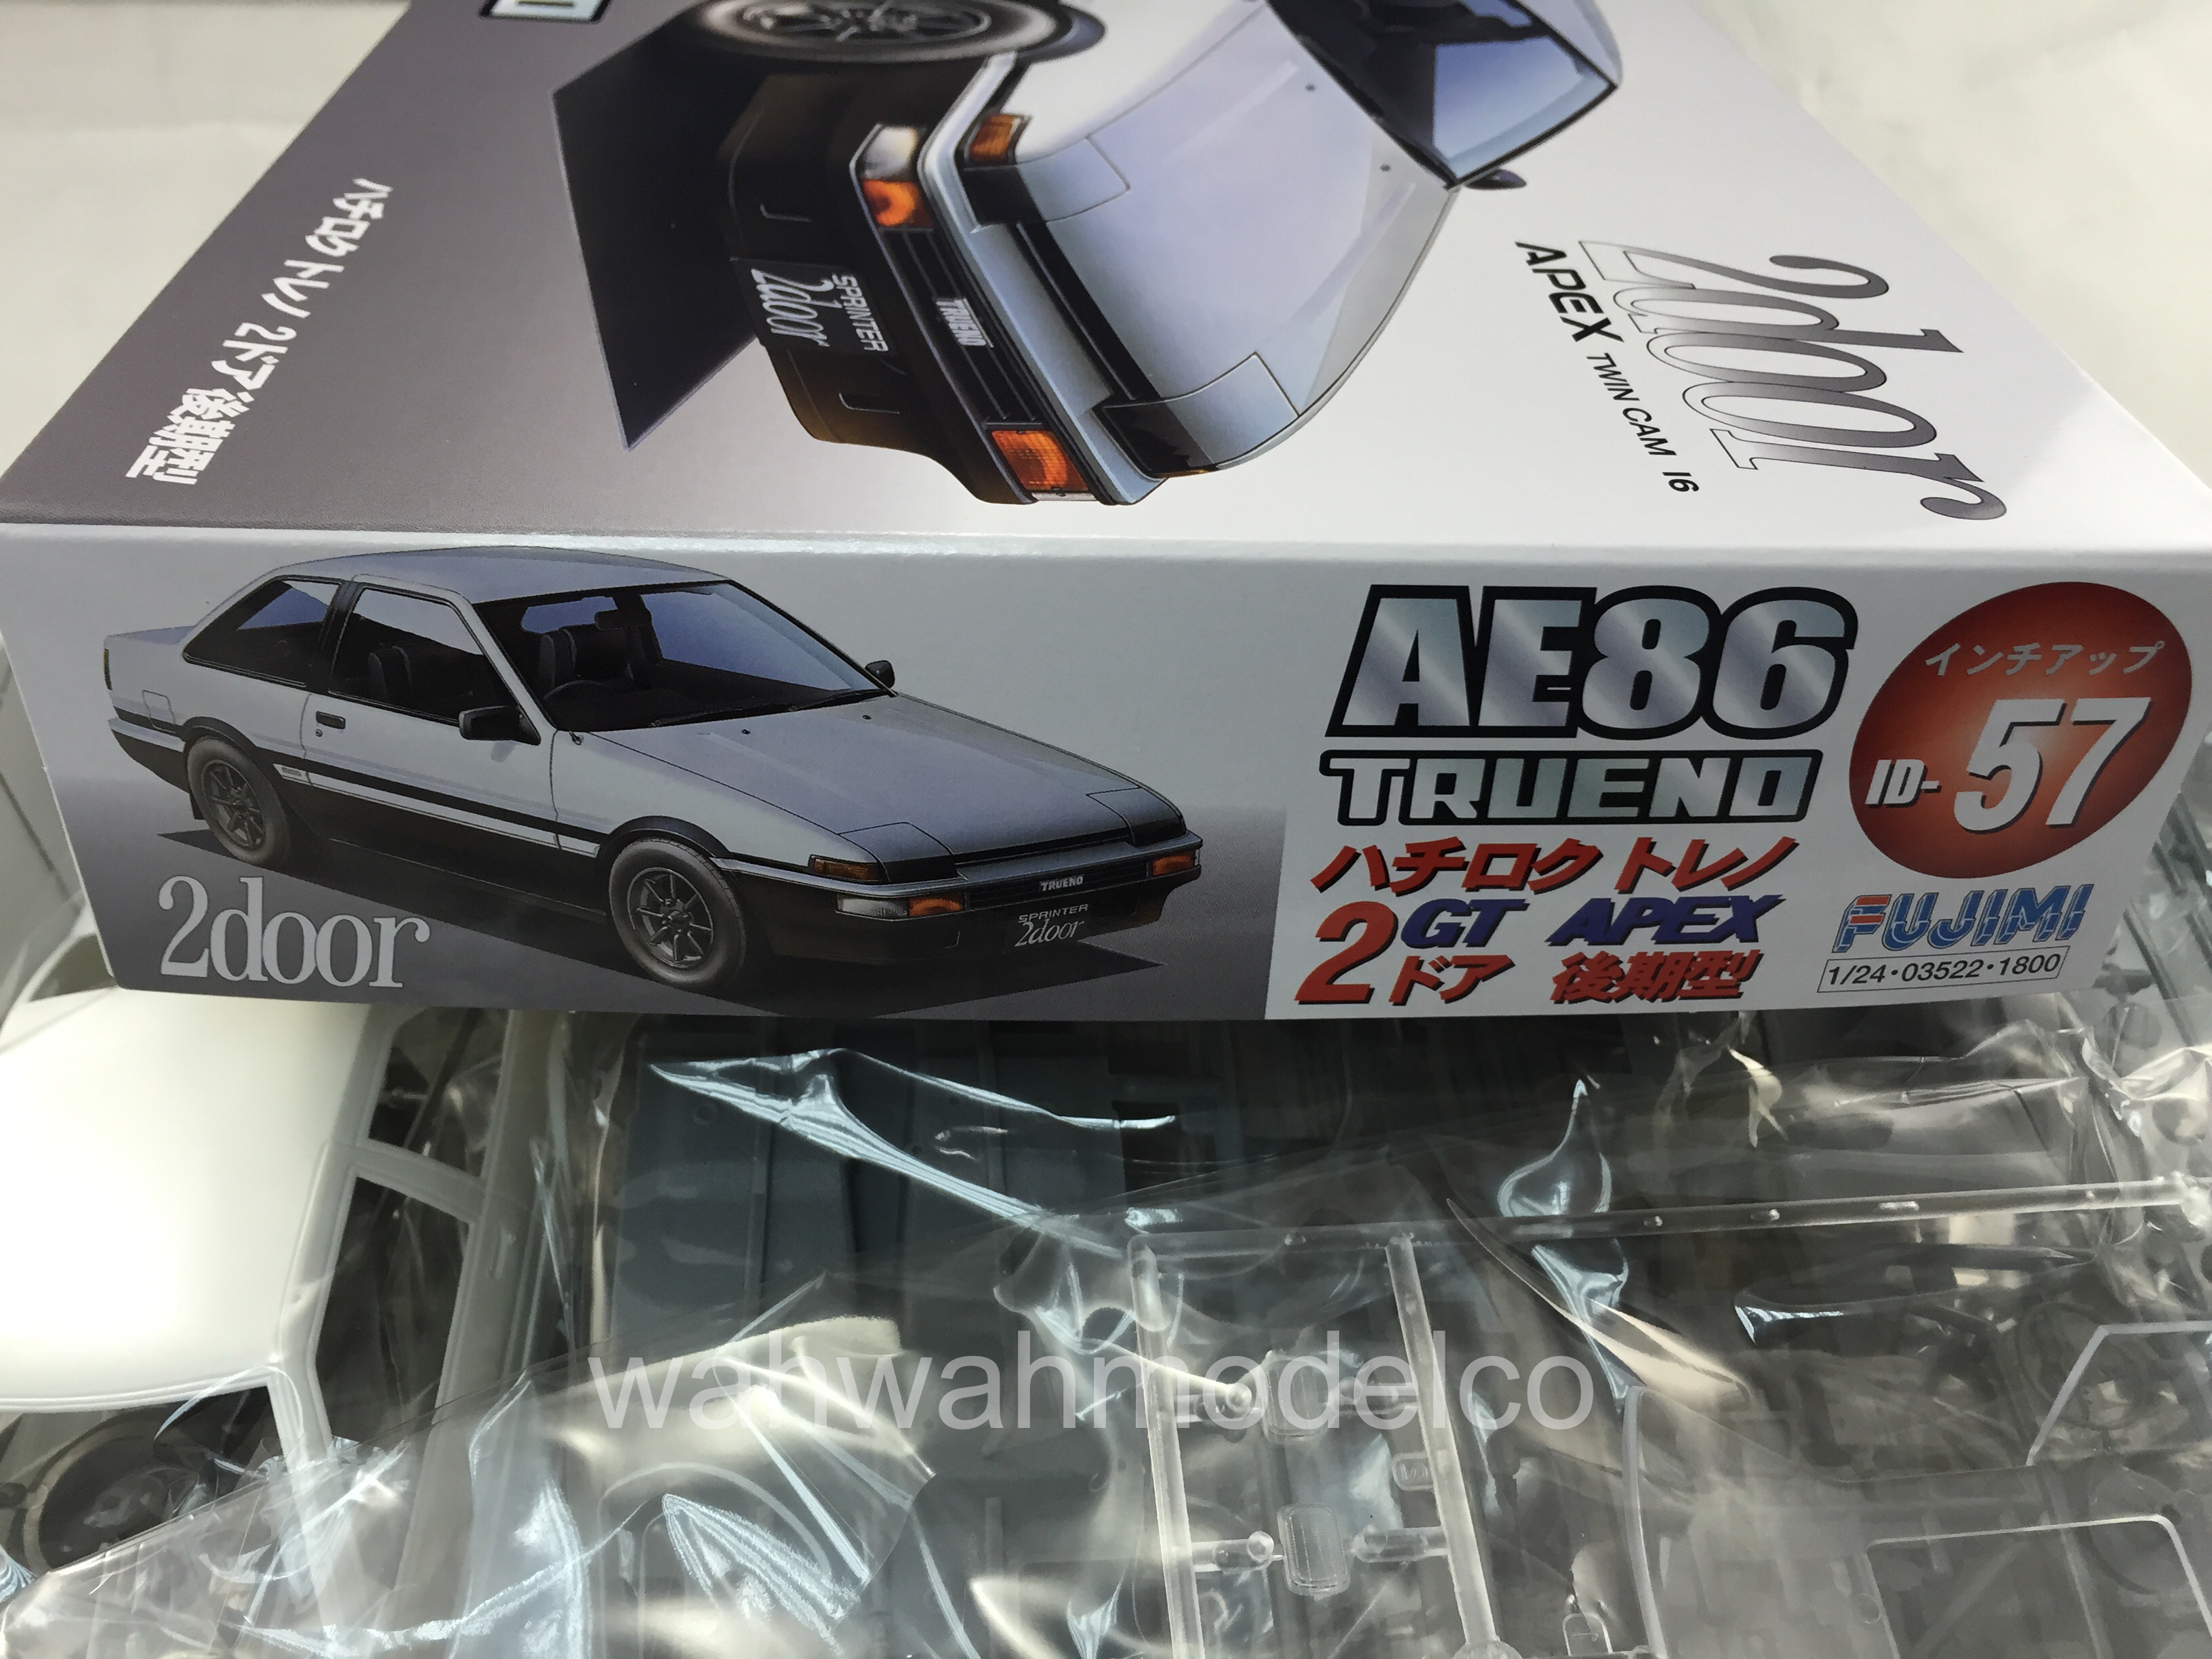 Fujimi 1/24 ID-57 AE86 Trueno 2Door GT Apex Late Version Plastic Model Kit NEW